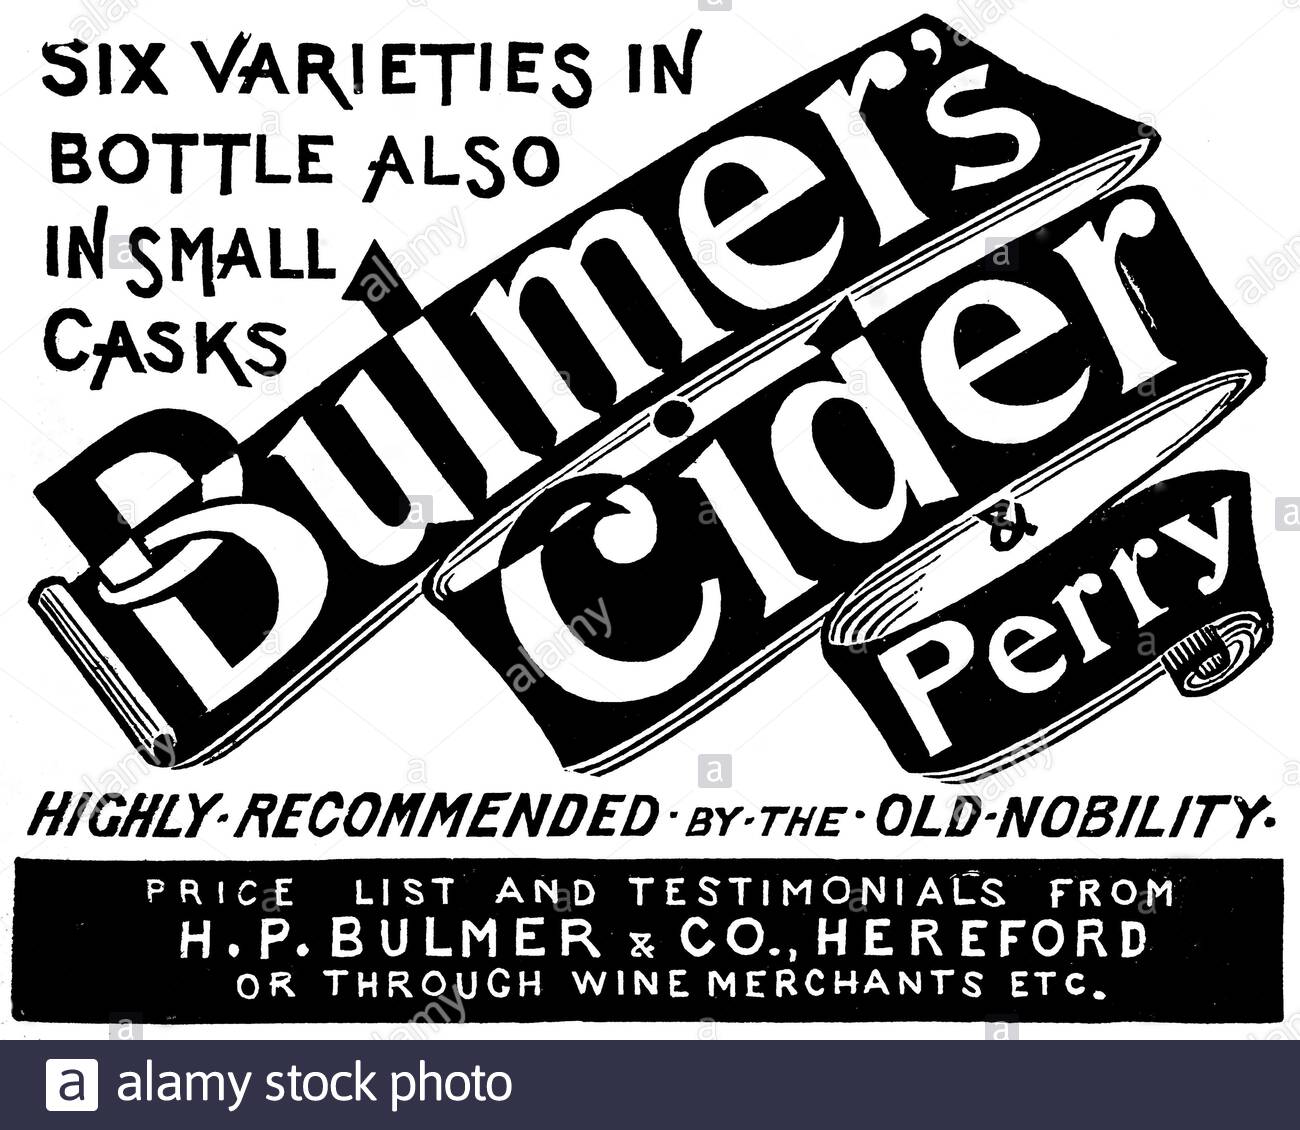 Époque victorienne, Bulmer's Cider et Perry, publicité ancienne à partir de 1896 Banque D'Images